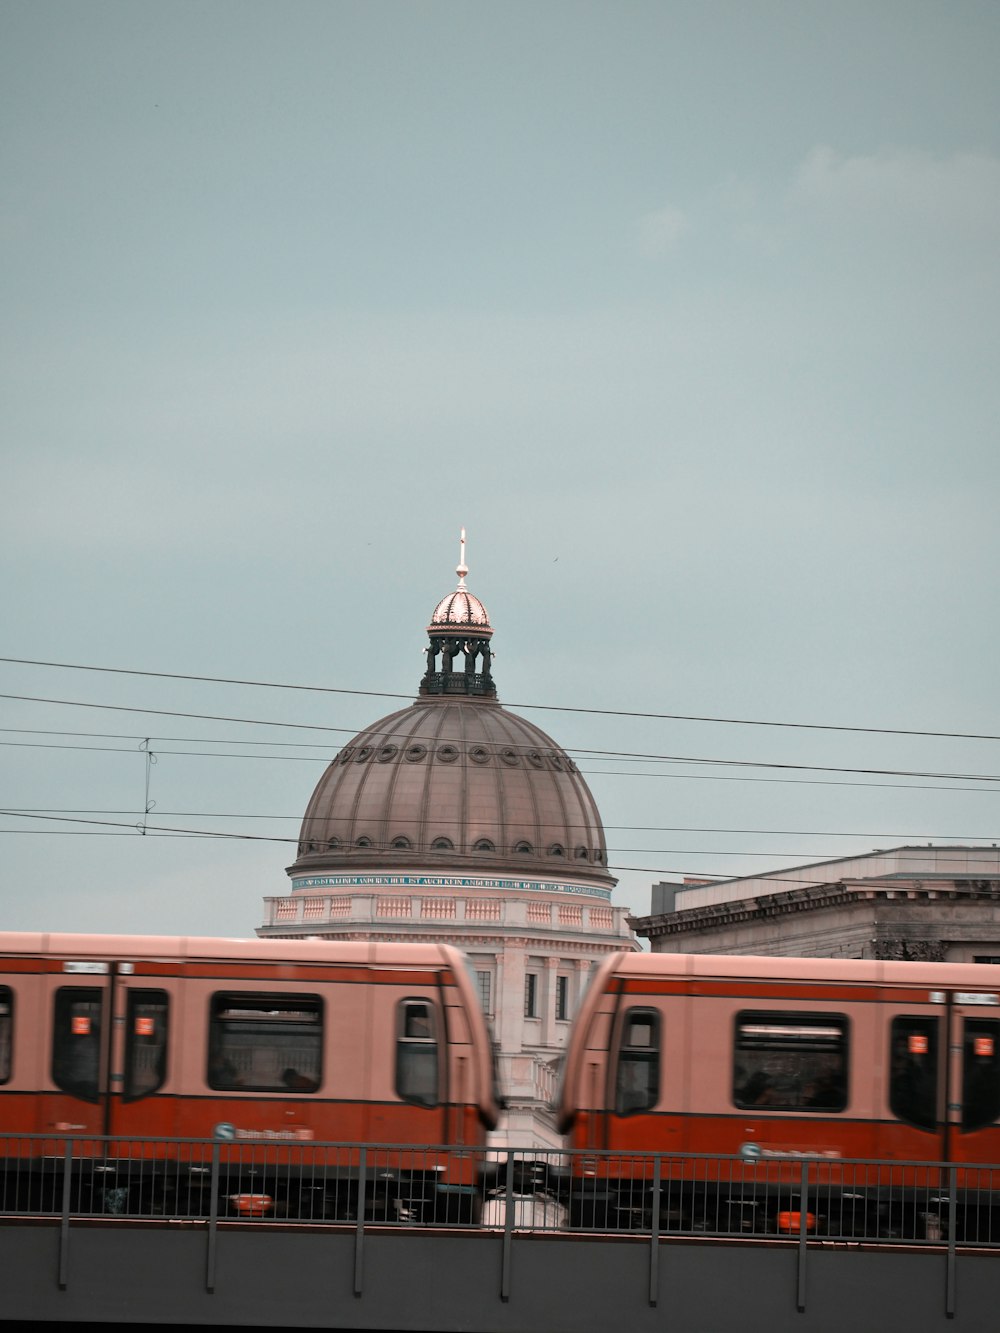 Ein roter Zug fährt an einem hohen weißen Gebäude vorbei